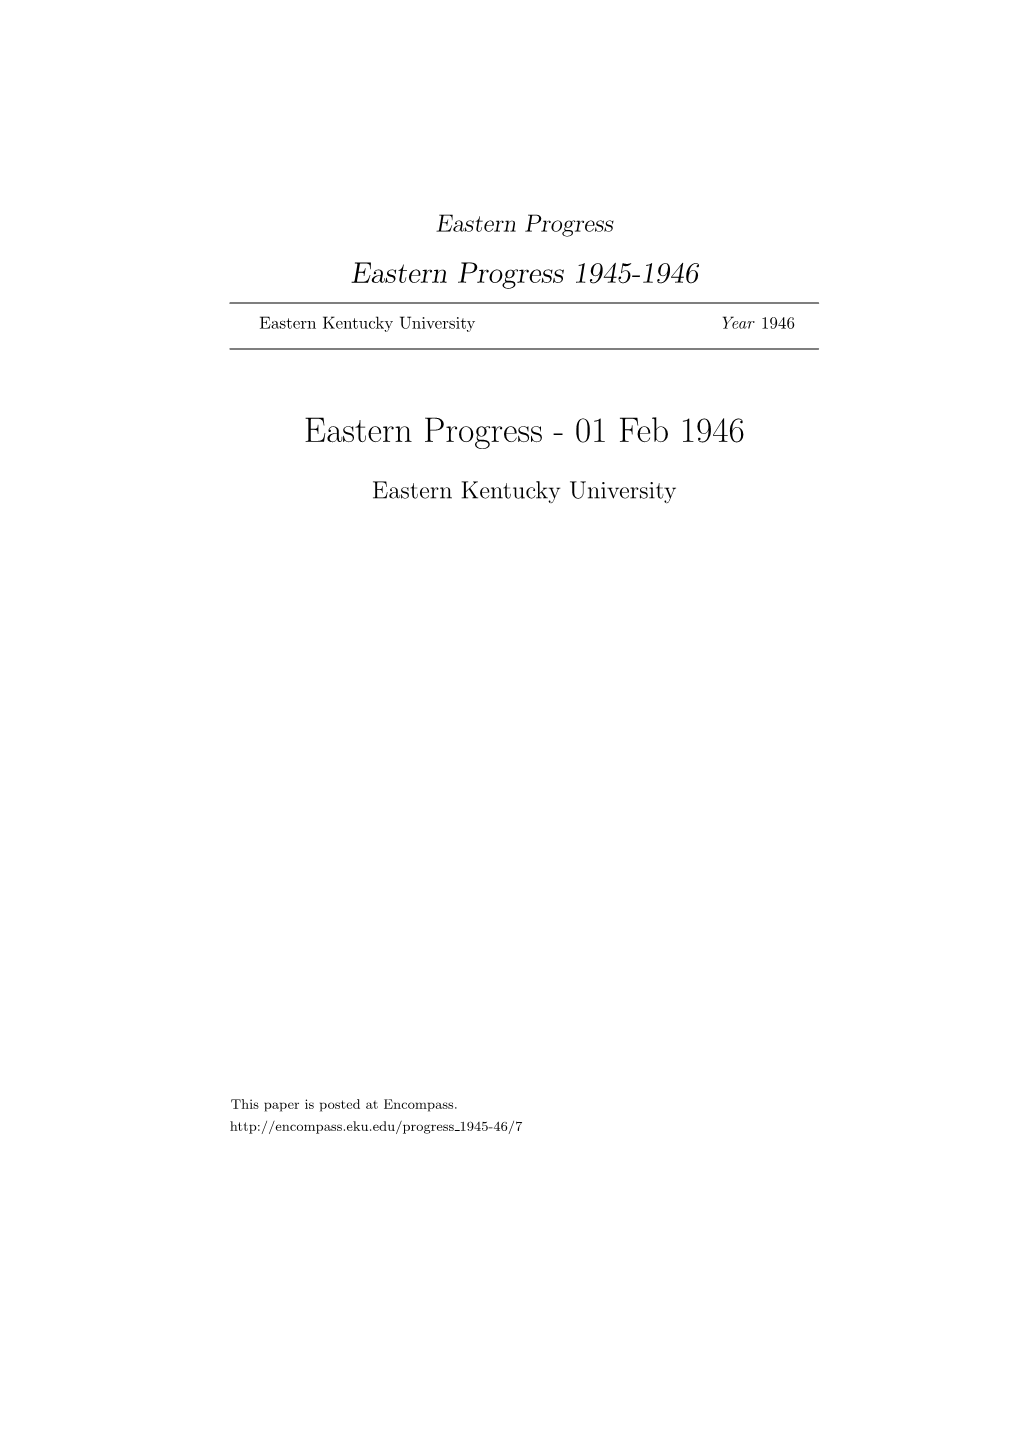 Eastern Progress Eastern Progress 1945-1946